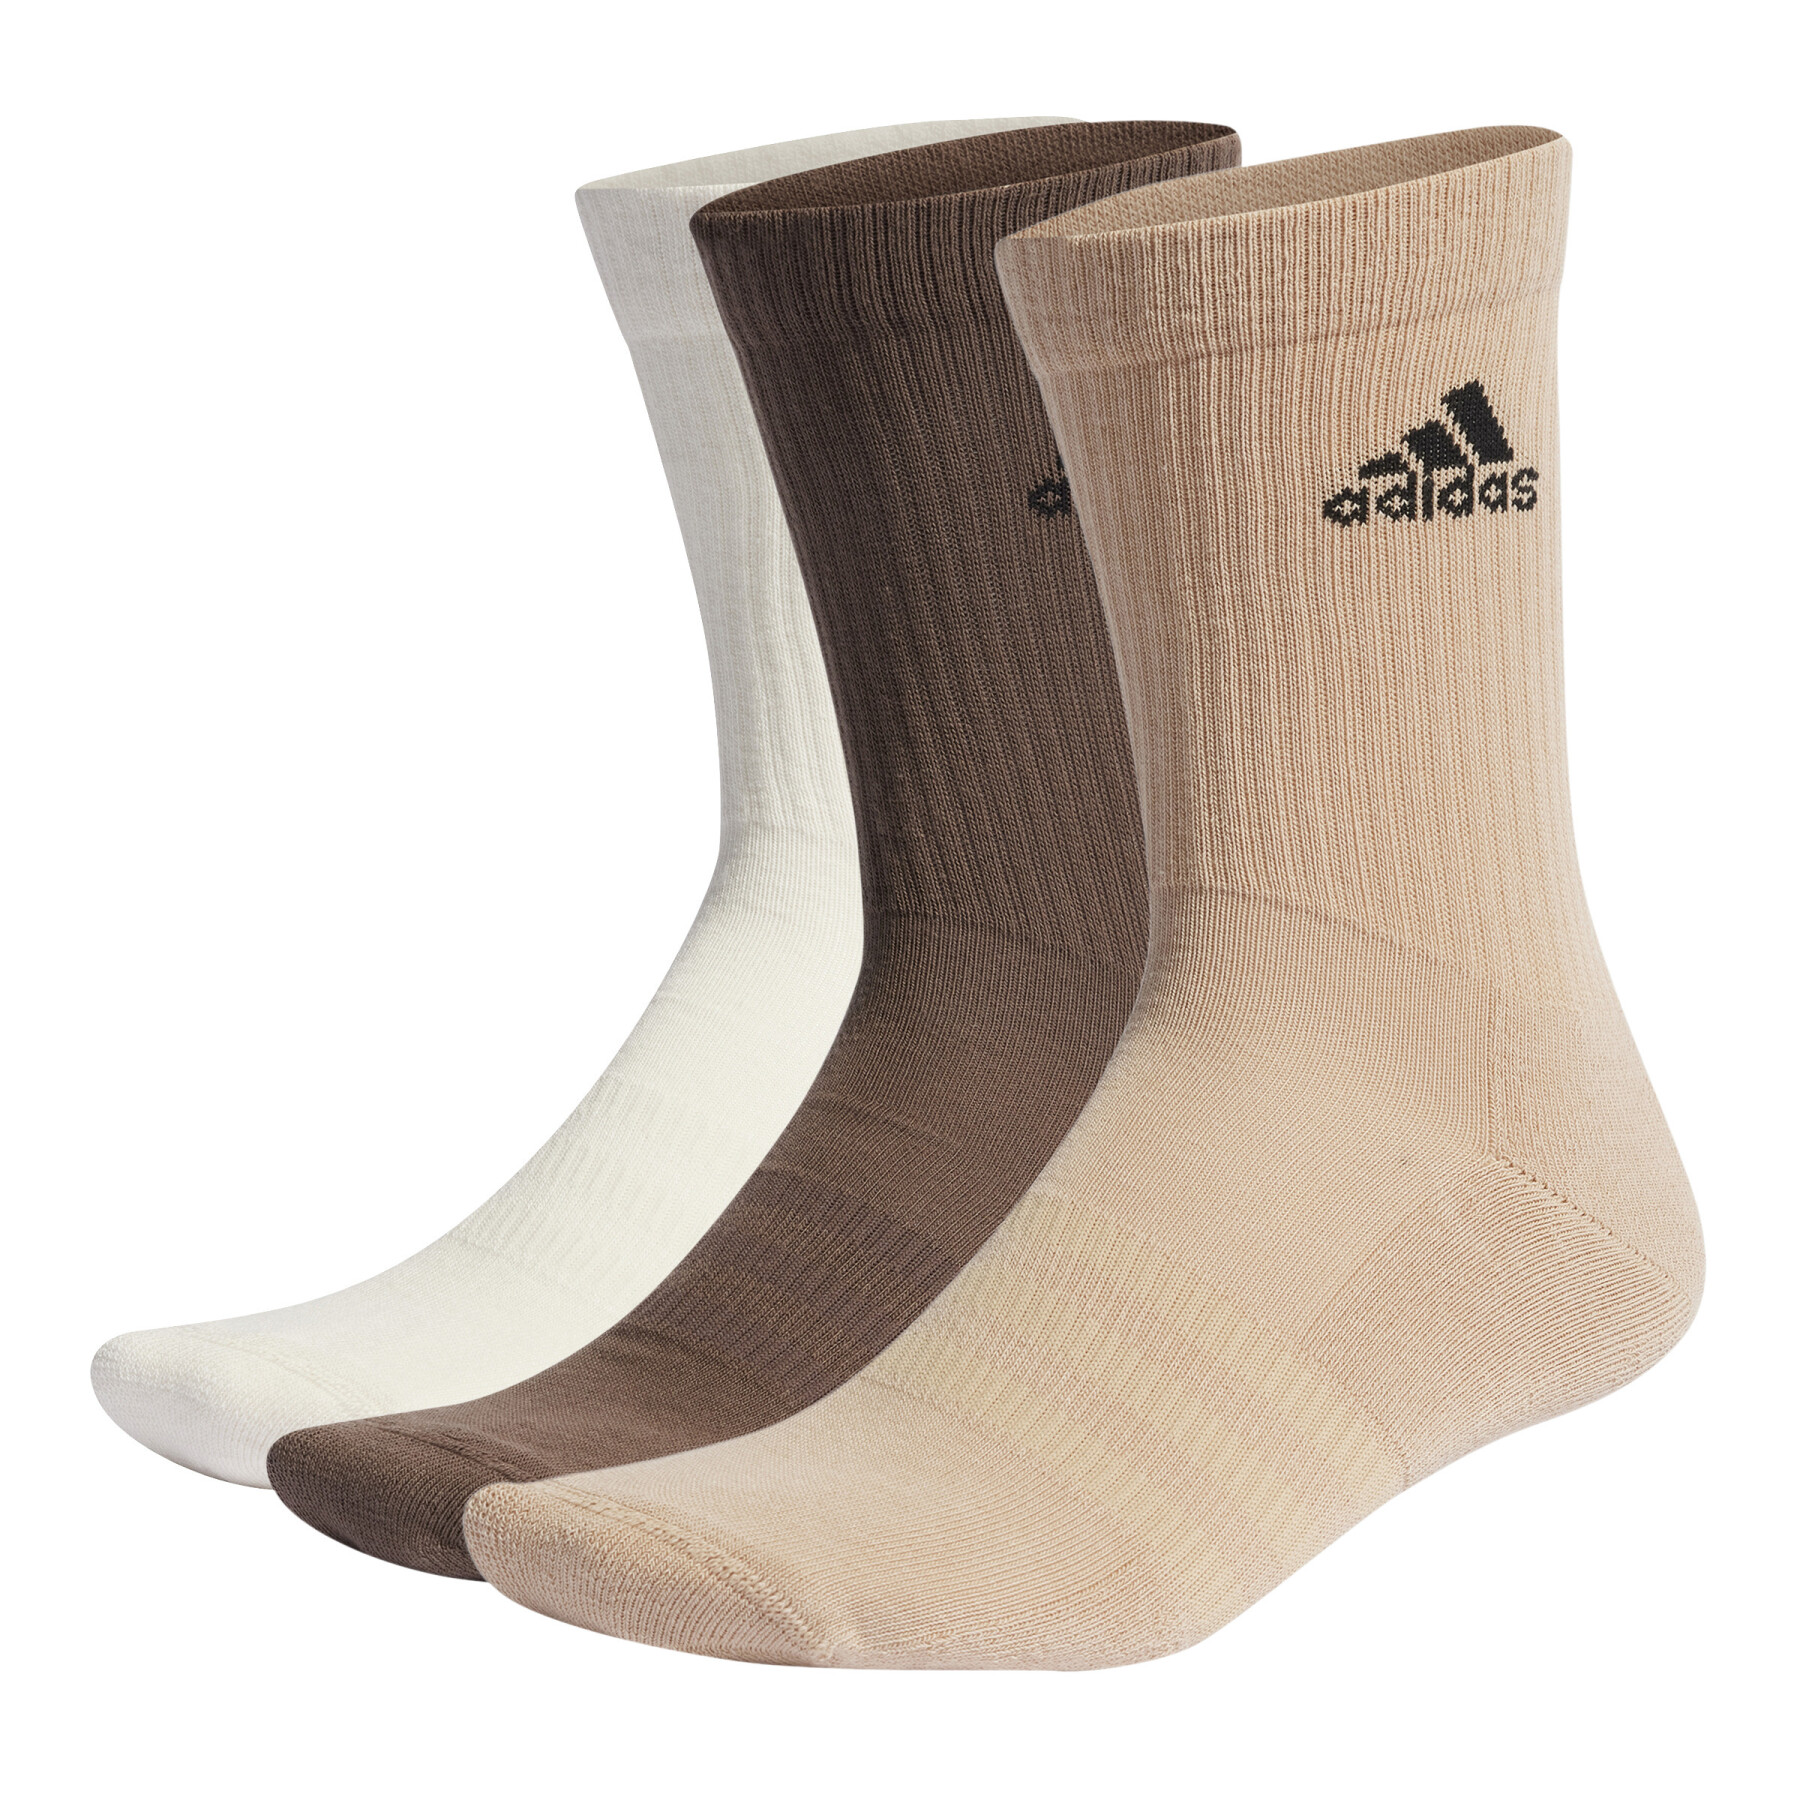 Hohe Socken Kind adidas (x3)